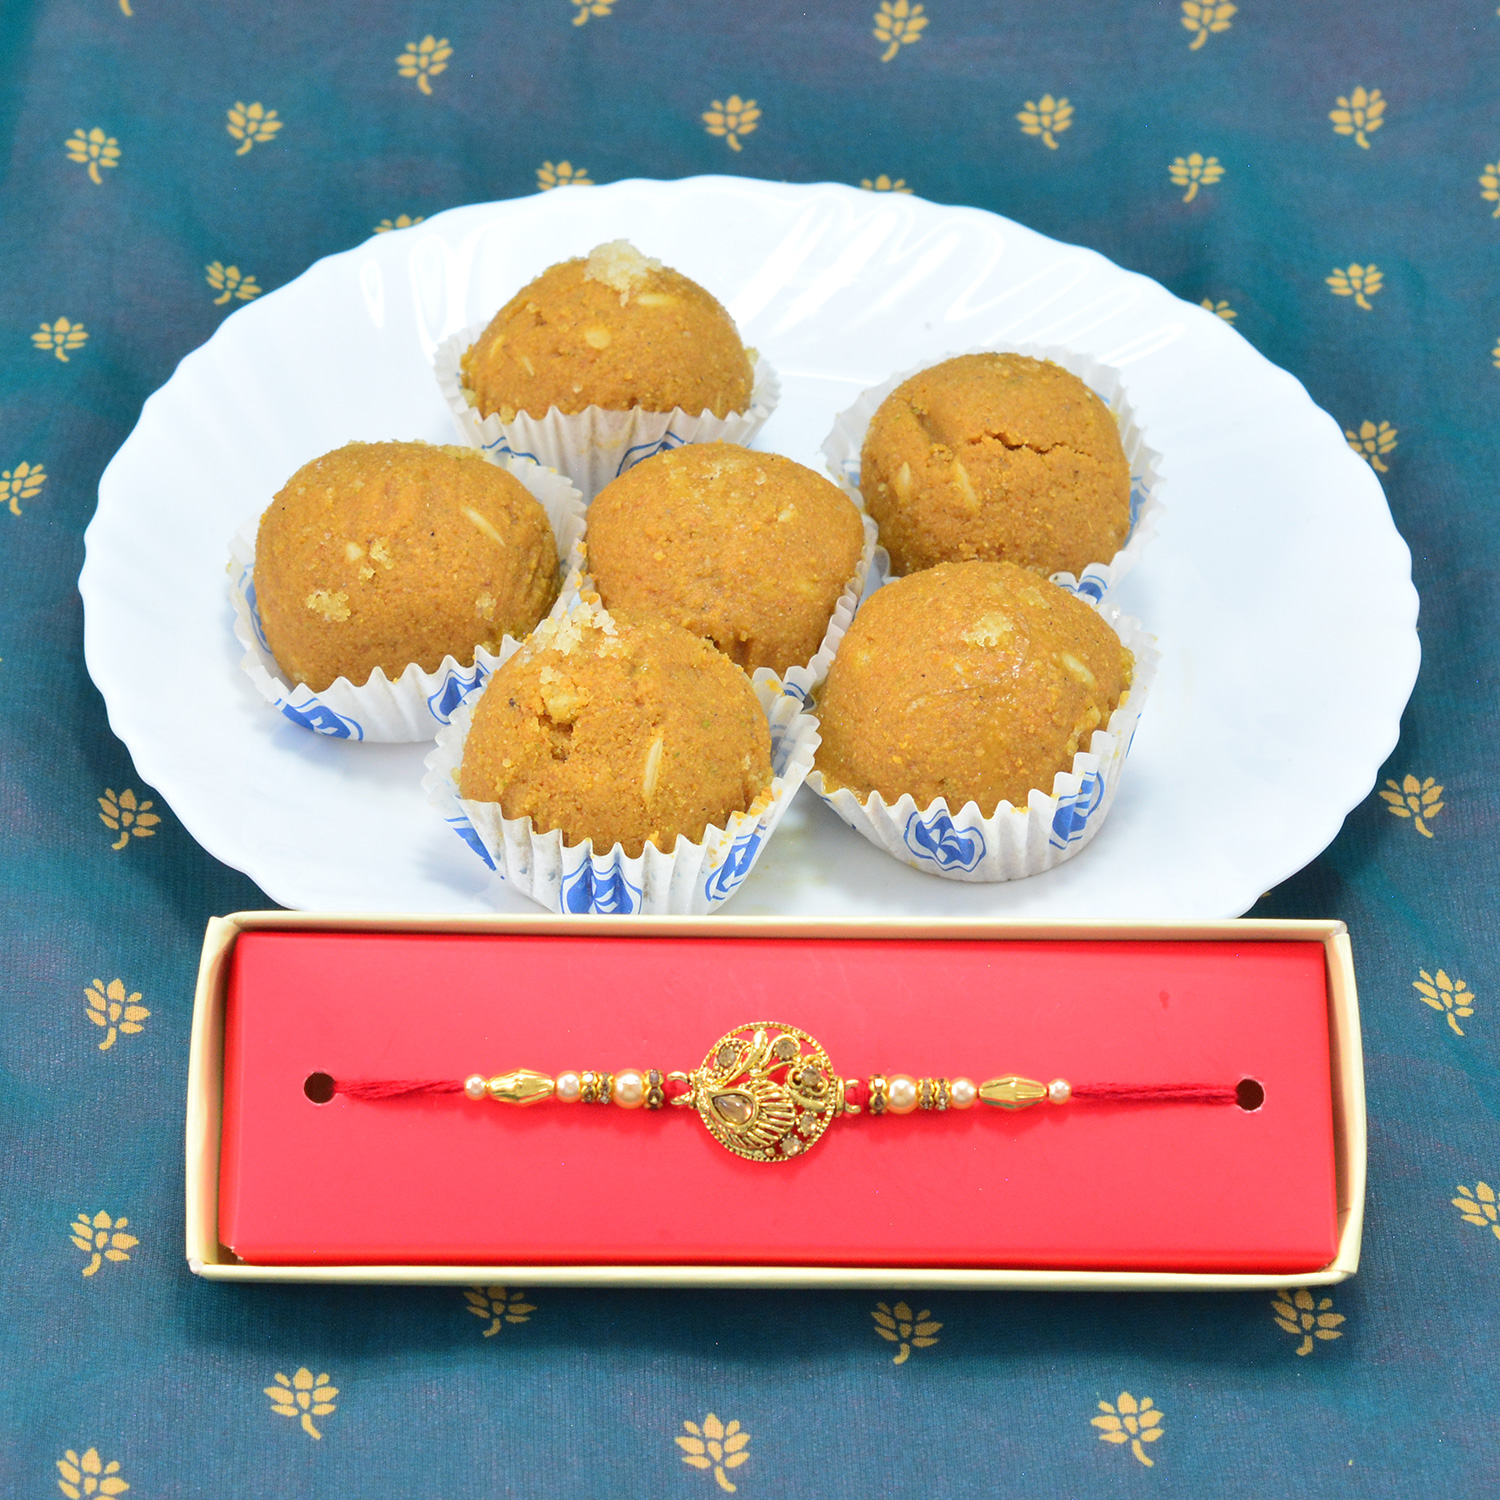 Tasty Branded Besan Ke Laddu with Golden Unique Design Rakhi for Brother